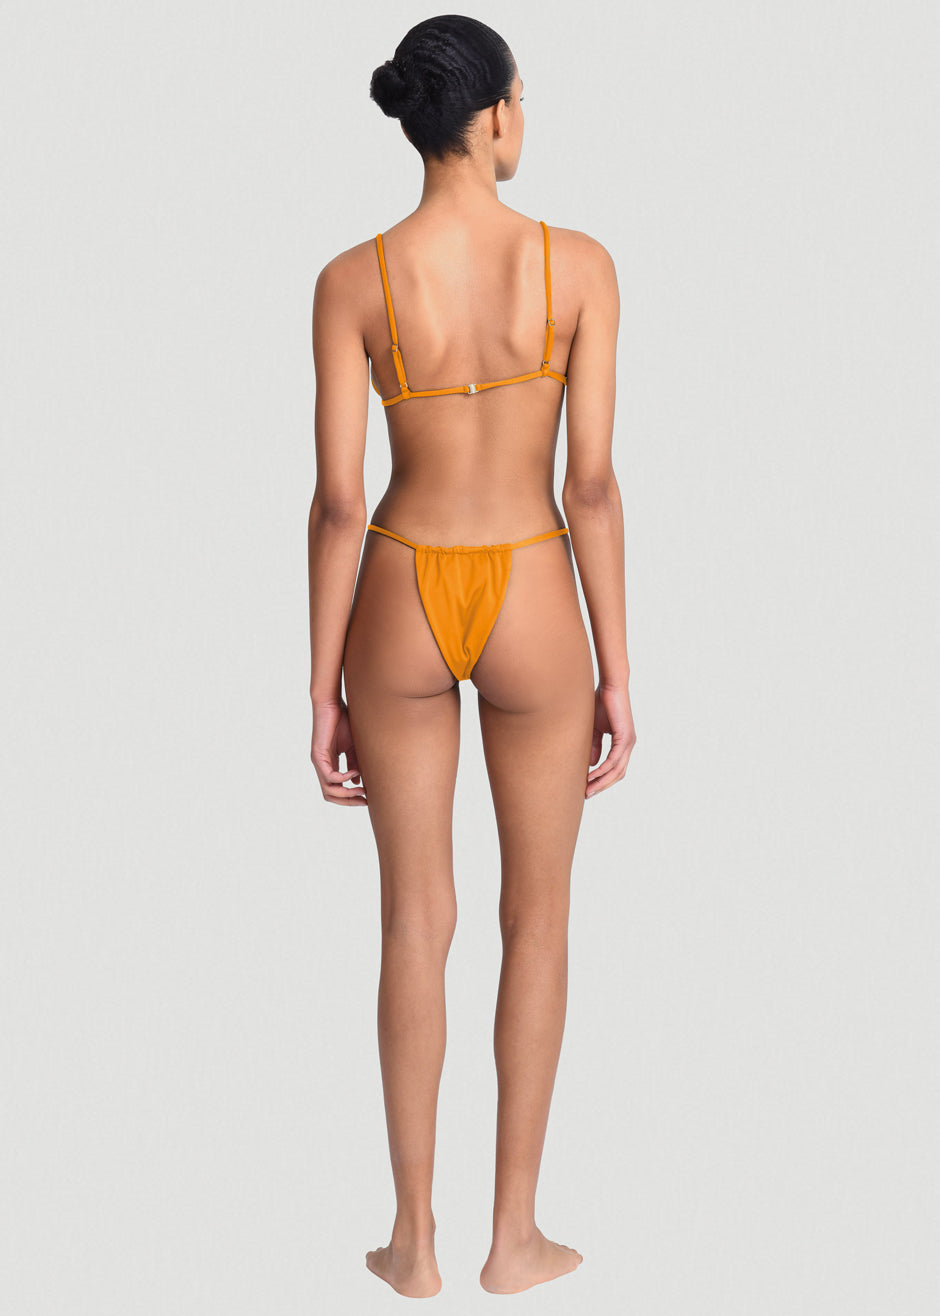 Aexae Gathered Swimsuit Bottoms - Orange - 4